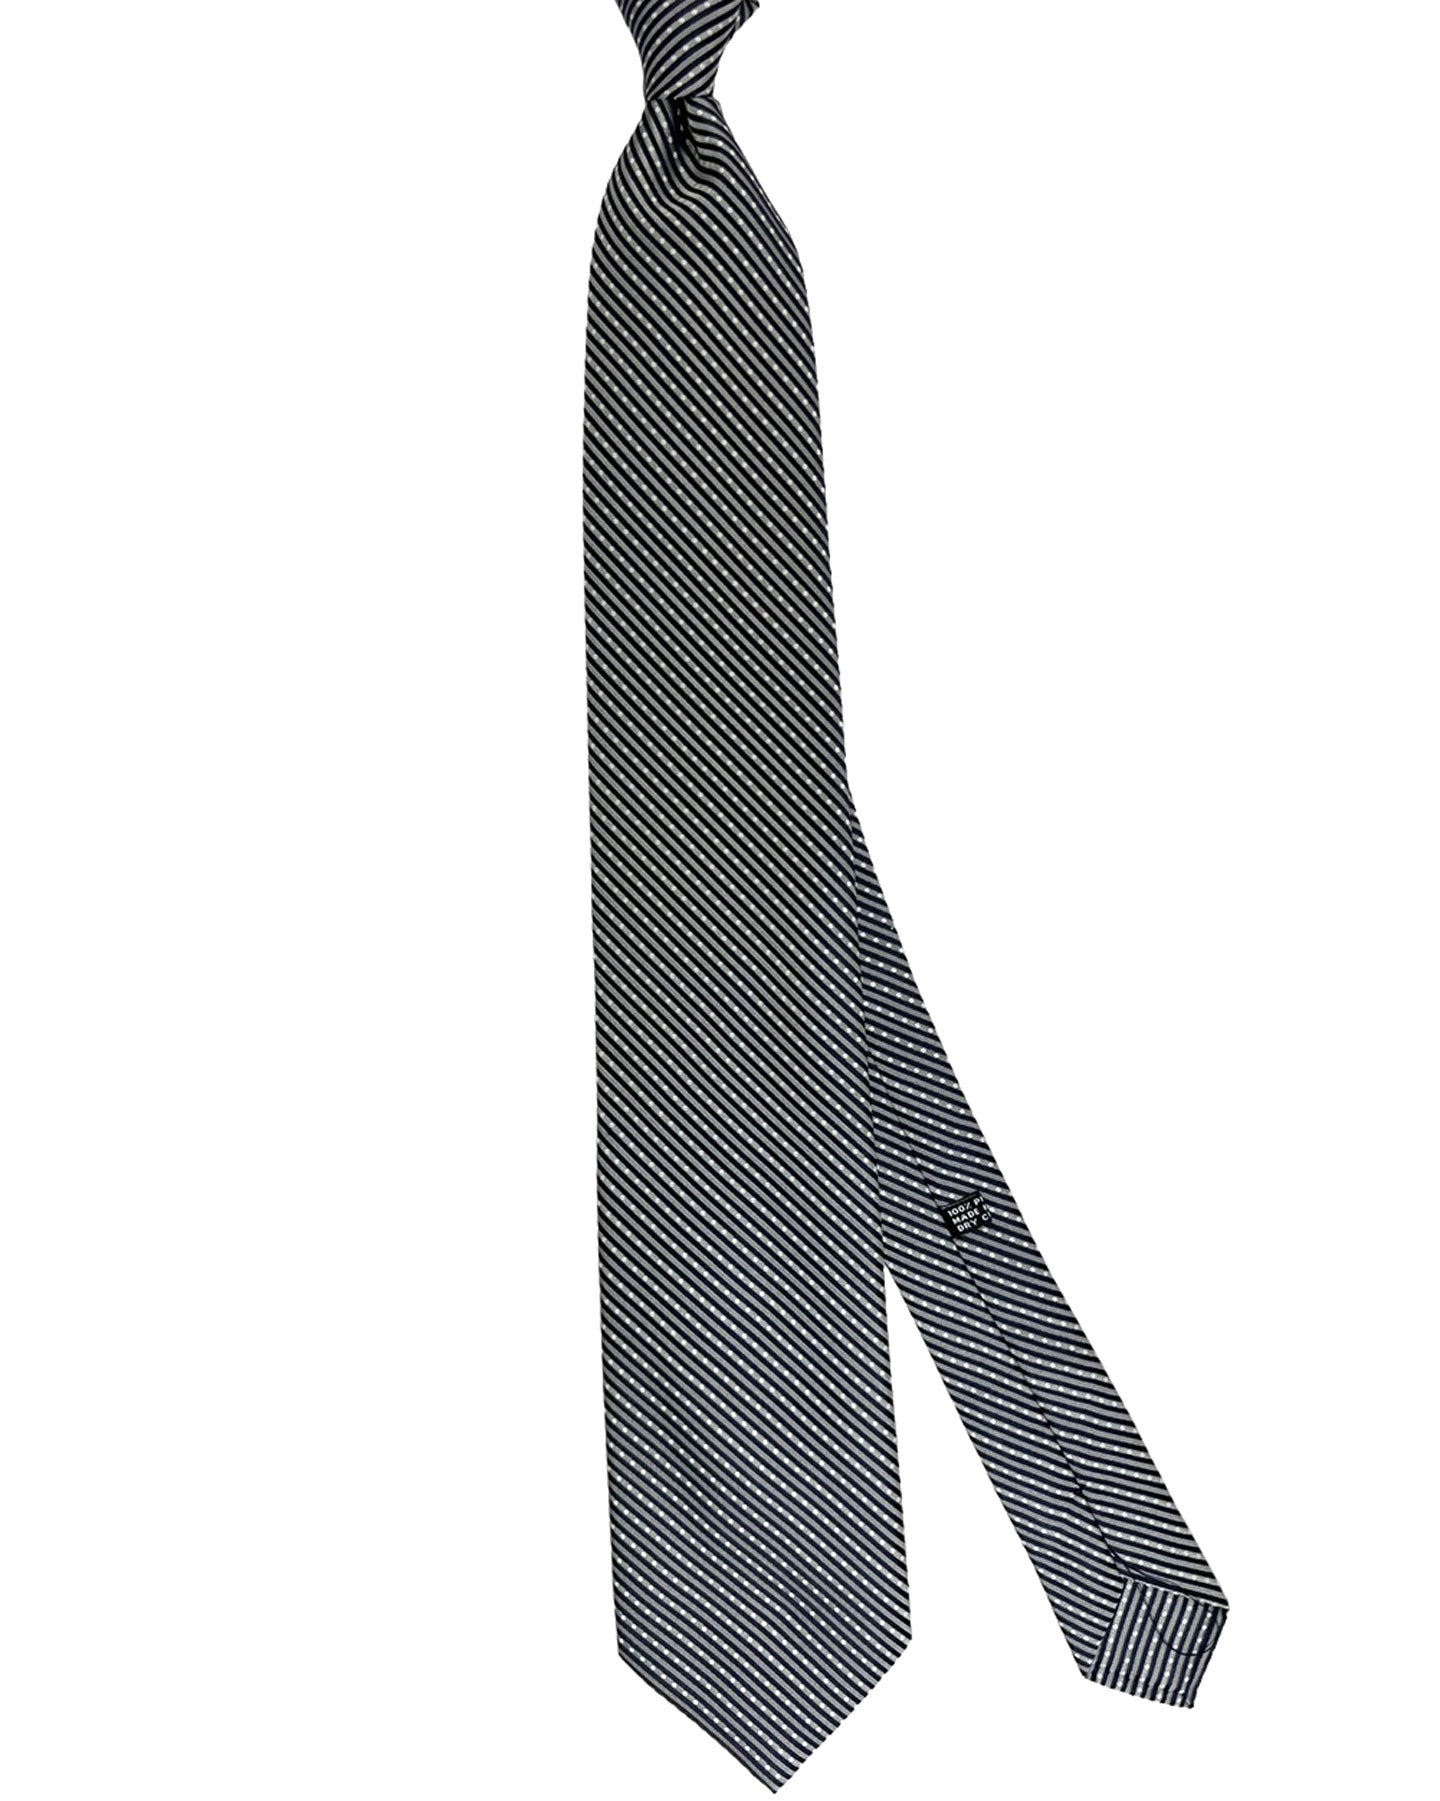 Stefano Ricci Silk Tie Gray Stripes Design